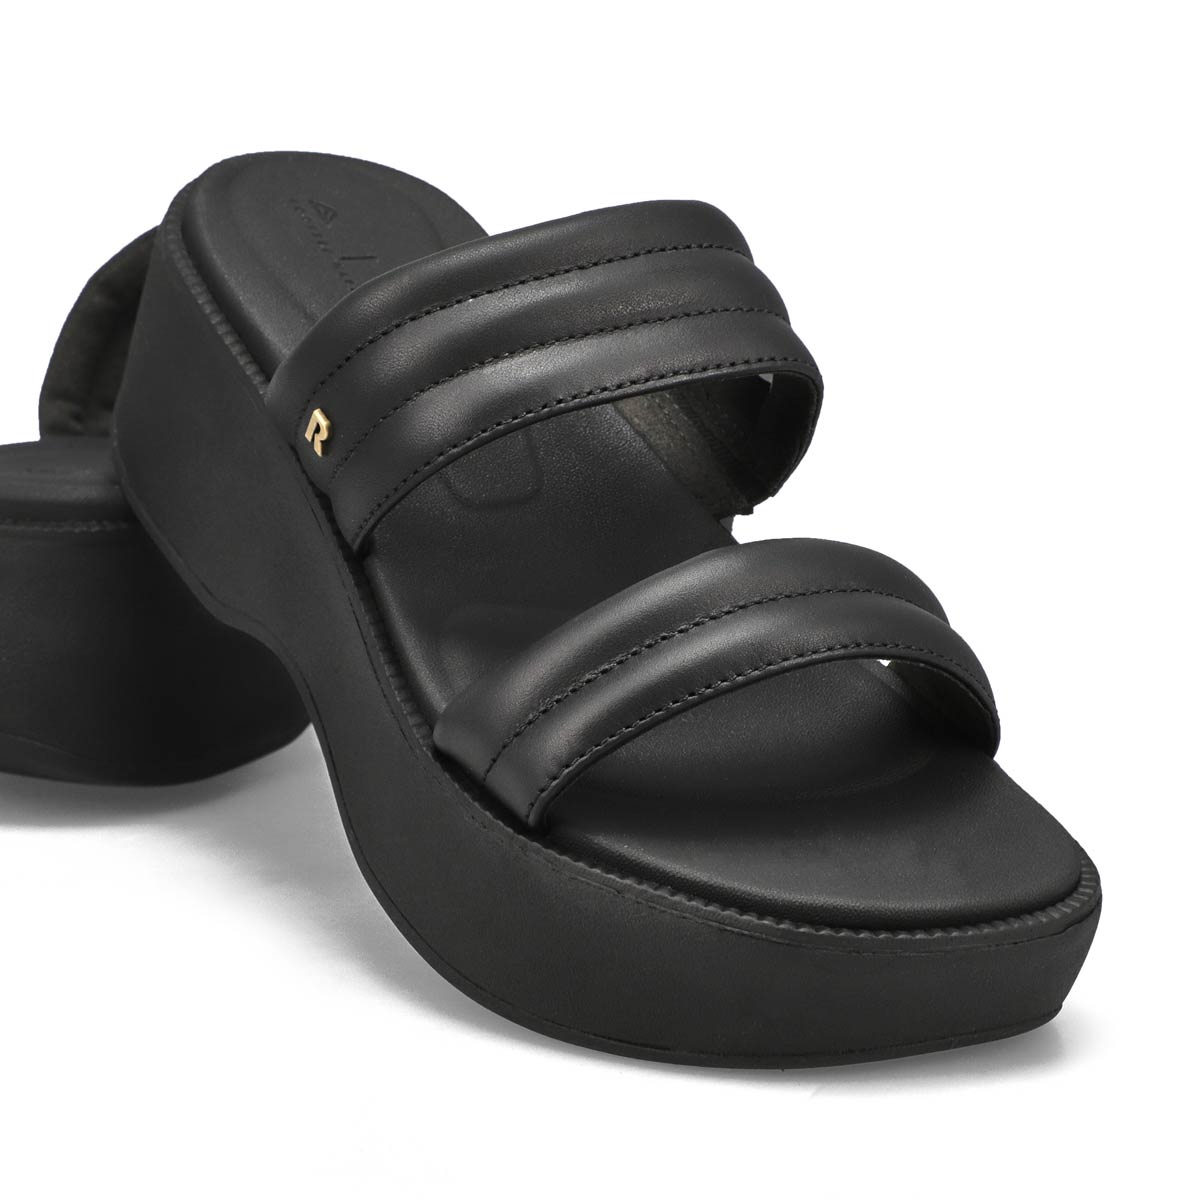 Ventutto Black Crystal Embellished Comfort Sandals-6 for womens